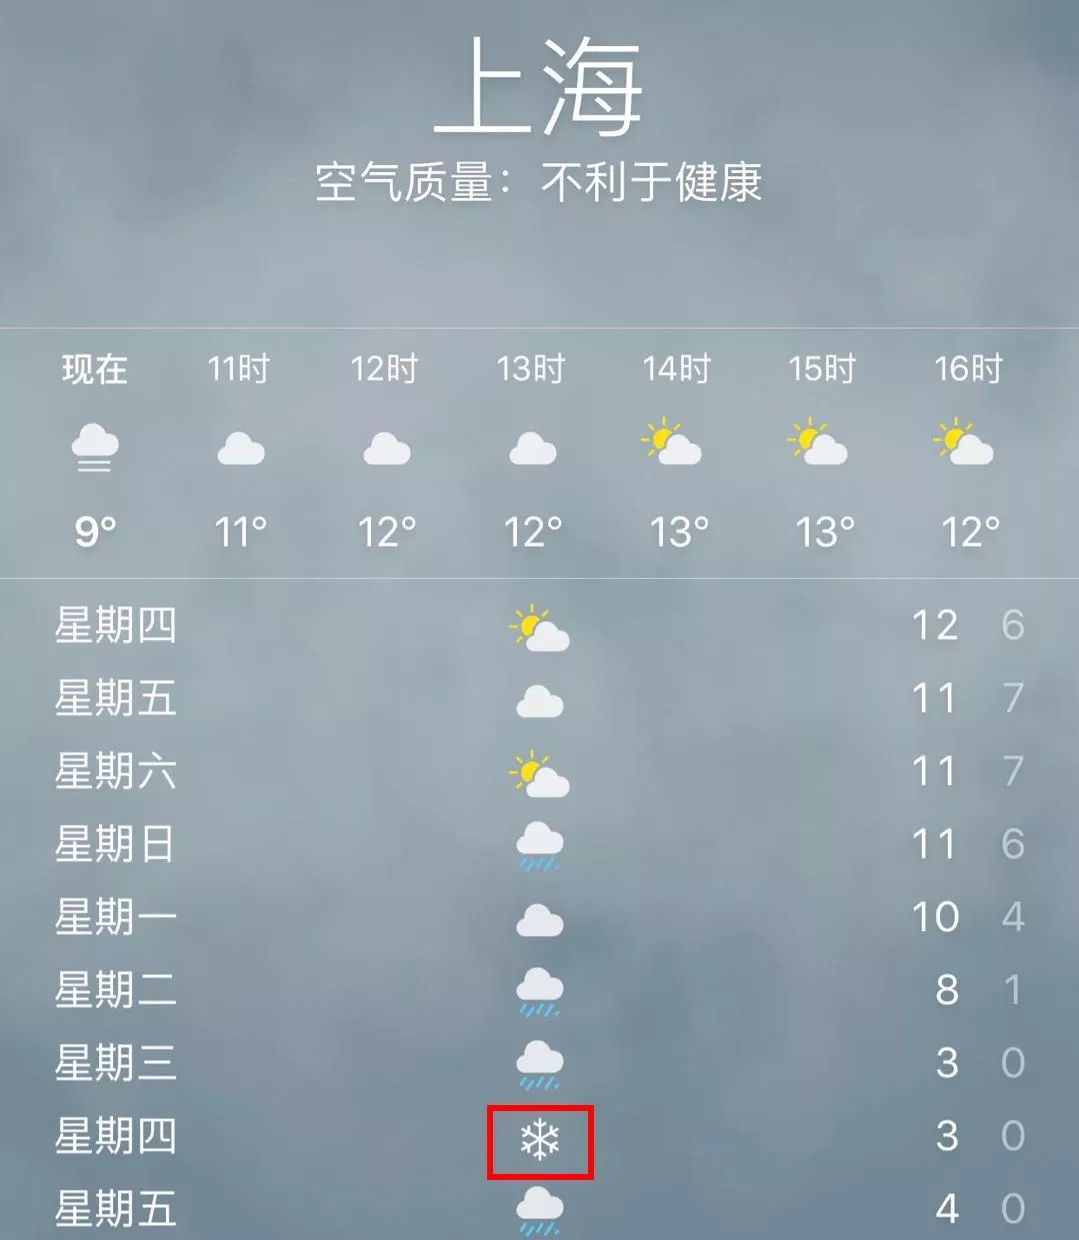 上海下周连下7天雪?看完天气预报,我